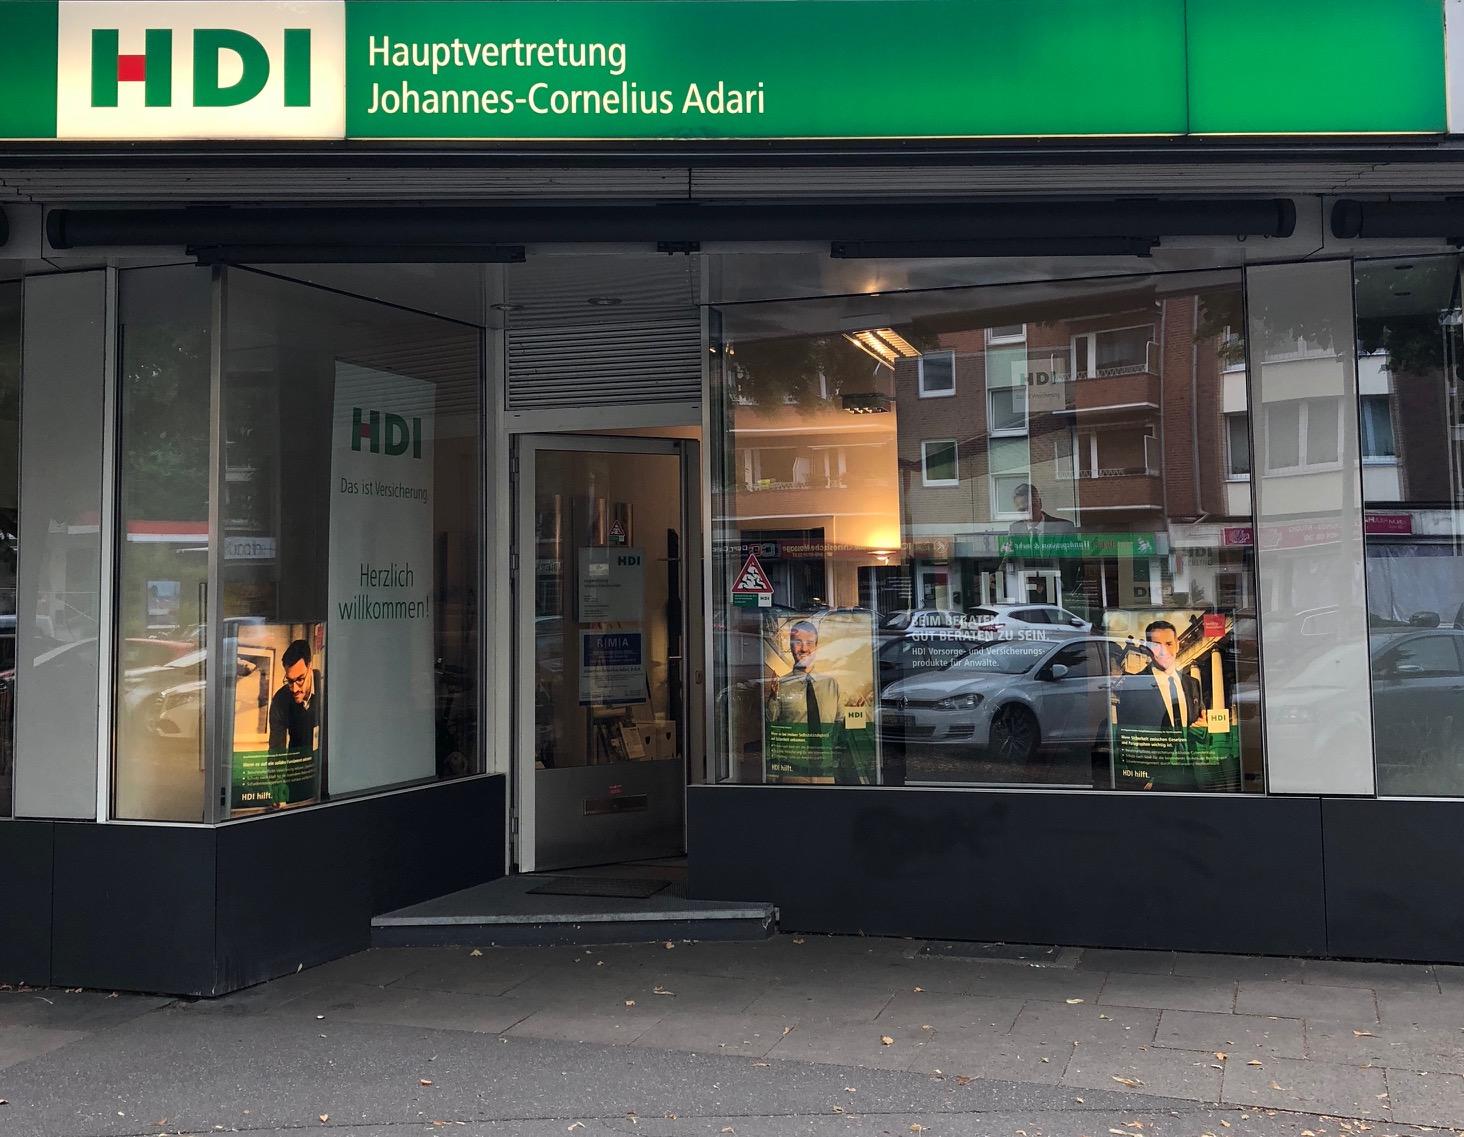 HDI Versicherungen: Johannes-Cornelius Adari, Mundsburger Damm 29 in Hamburg